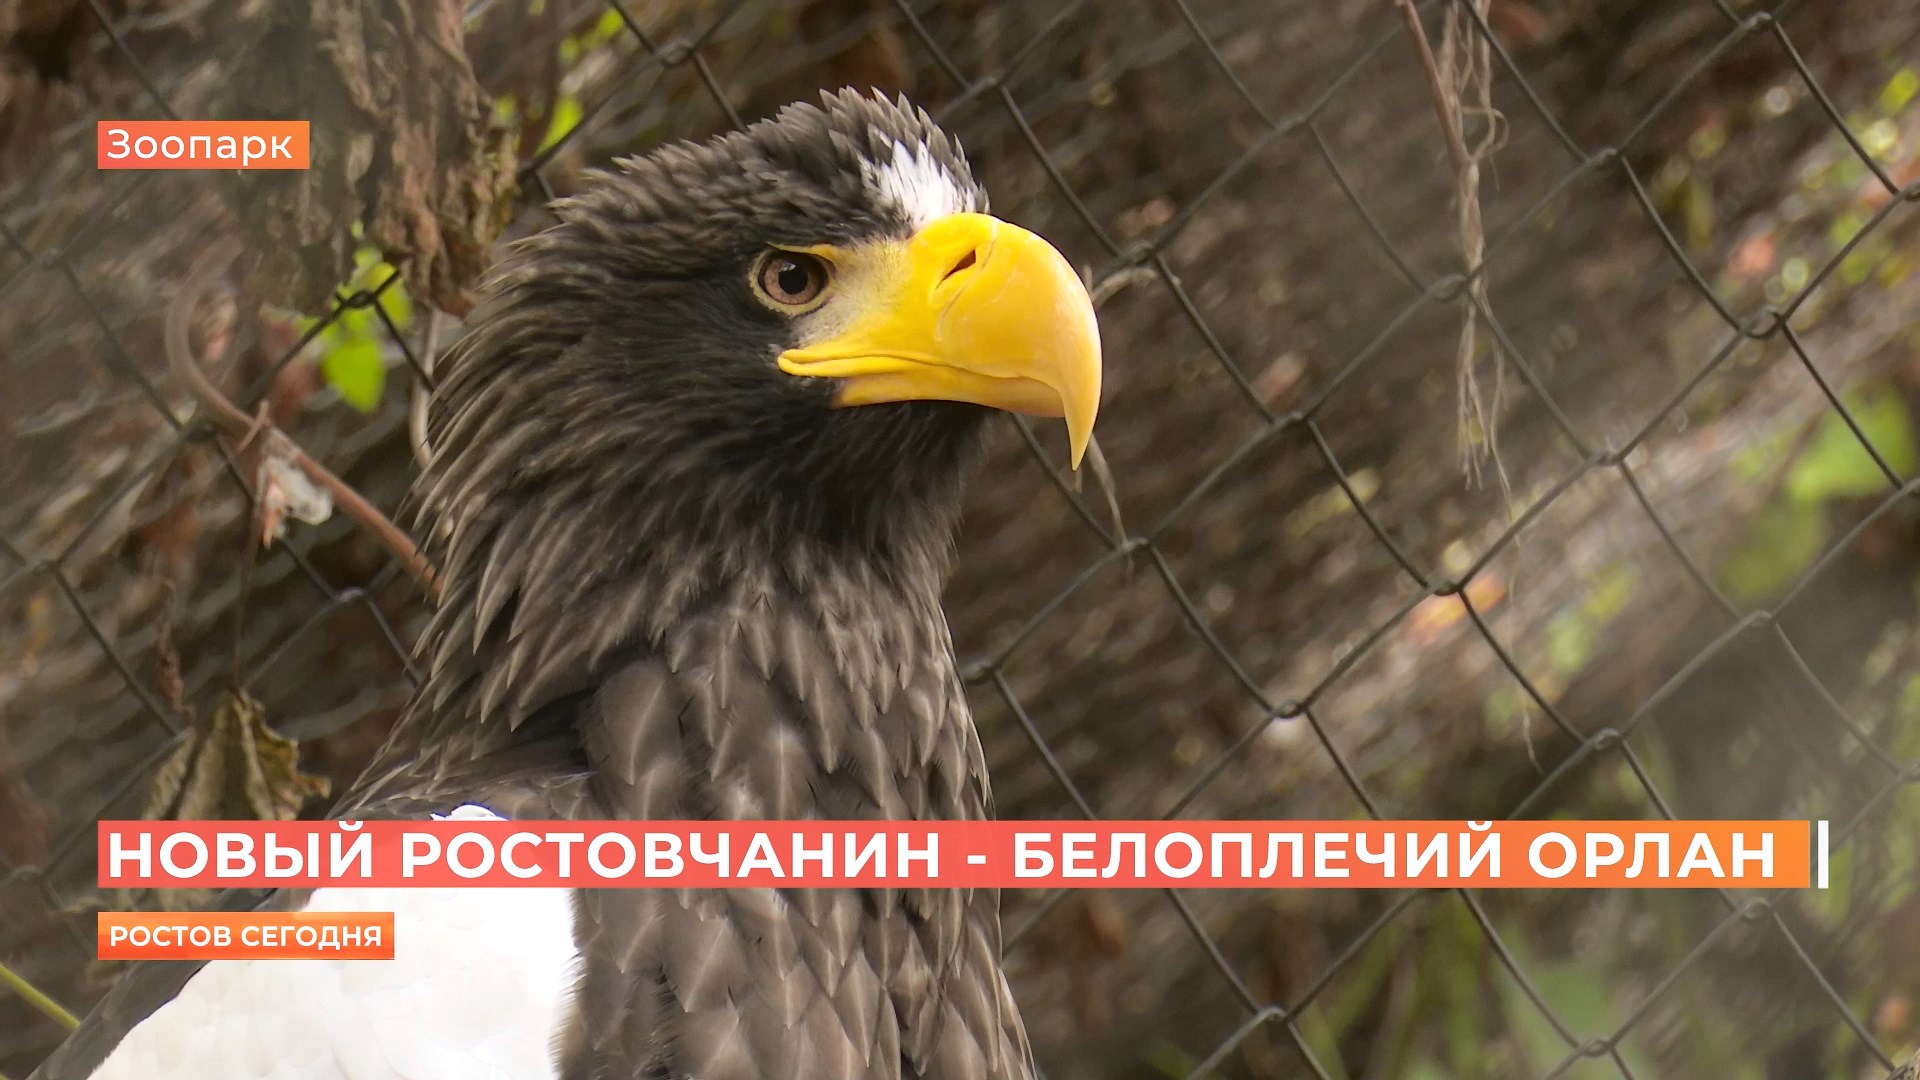 Белоплечий орлан поселился в Ростовском зоопарке